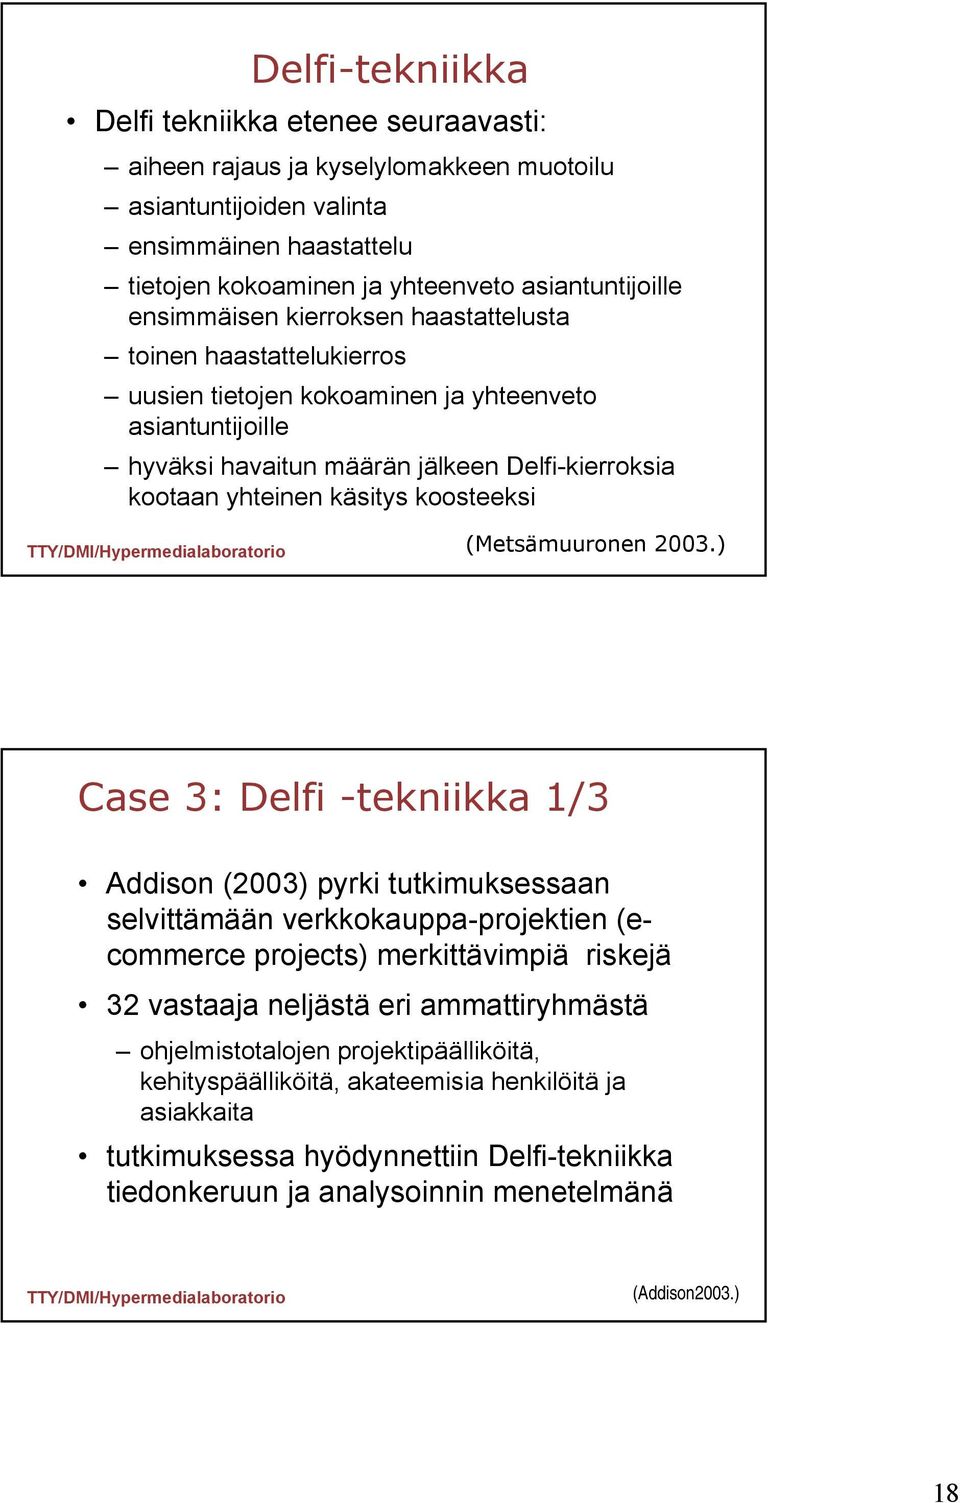 koosteeksi Case 3: Delfi -tekniikka 1/3 Addison (2003) pyrki tutkimuksessaan selvittämään verkkokauppa-projektien (ecommerce projects) merkittävimpiä riskejä 32 vastaaja neljästä eri